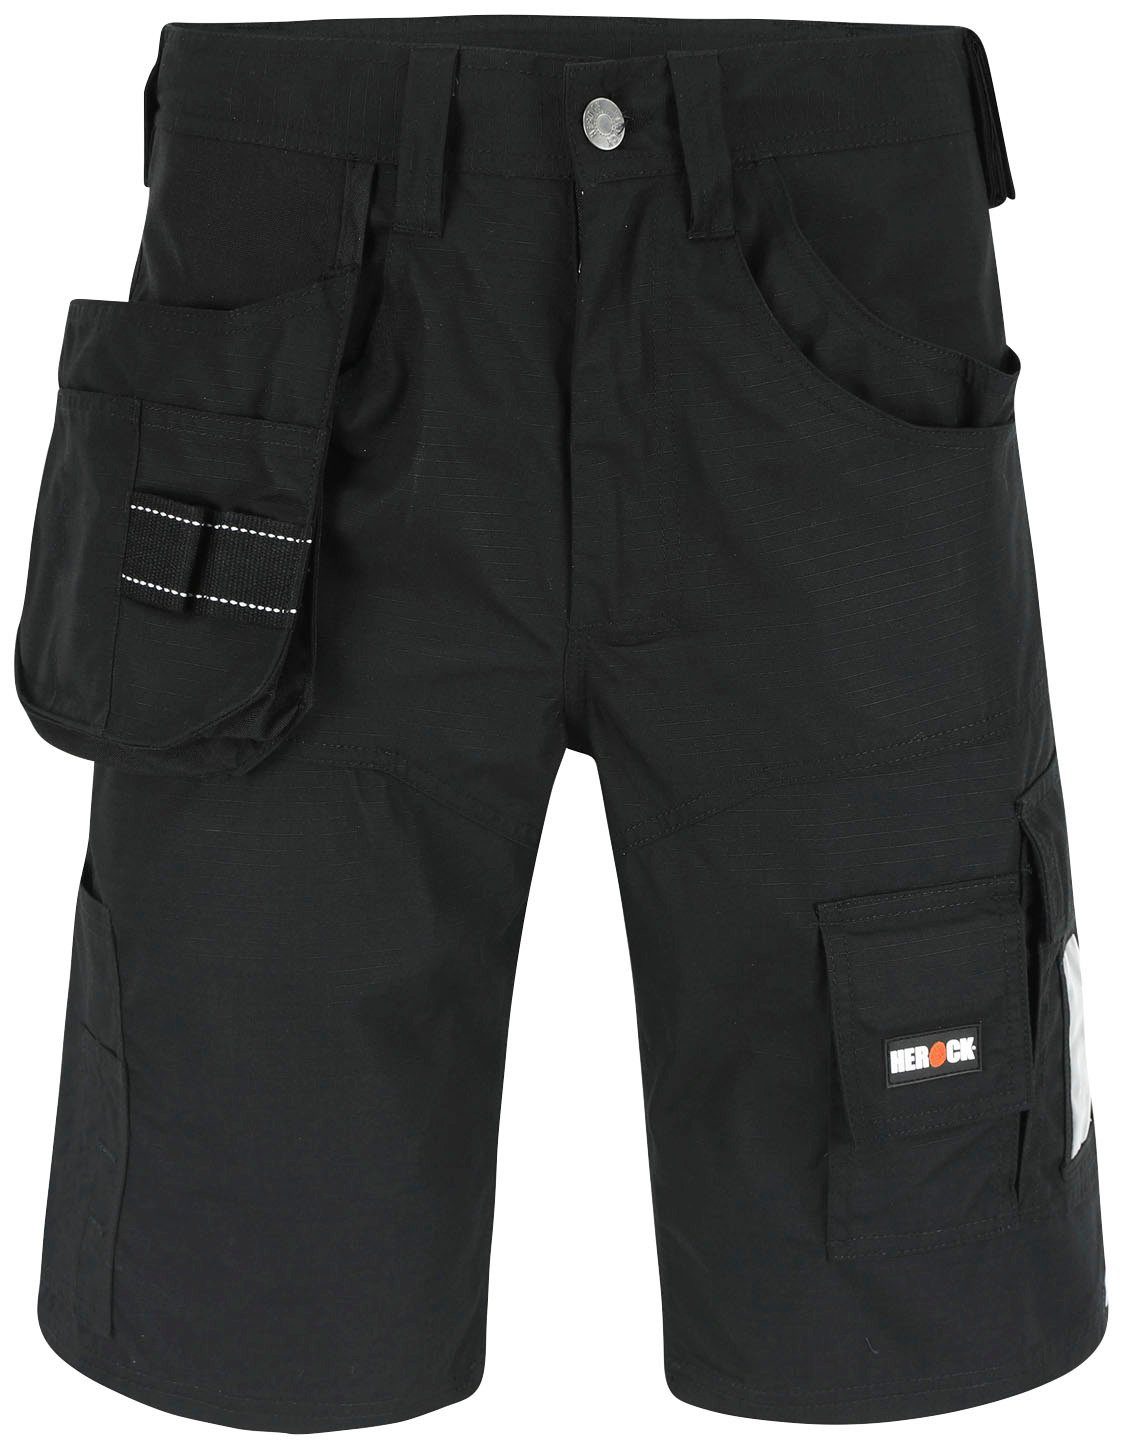 Bundschlaufe), Batua 1 Hammerschlaufe Nageltasche Vielen Taschen Arbeitshose (inkl. Bermudas Herock & schwarz